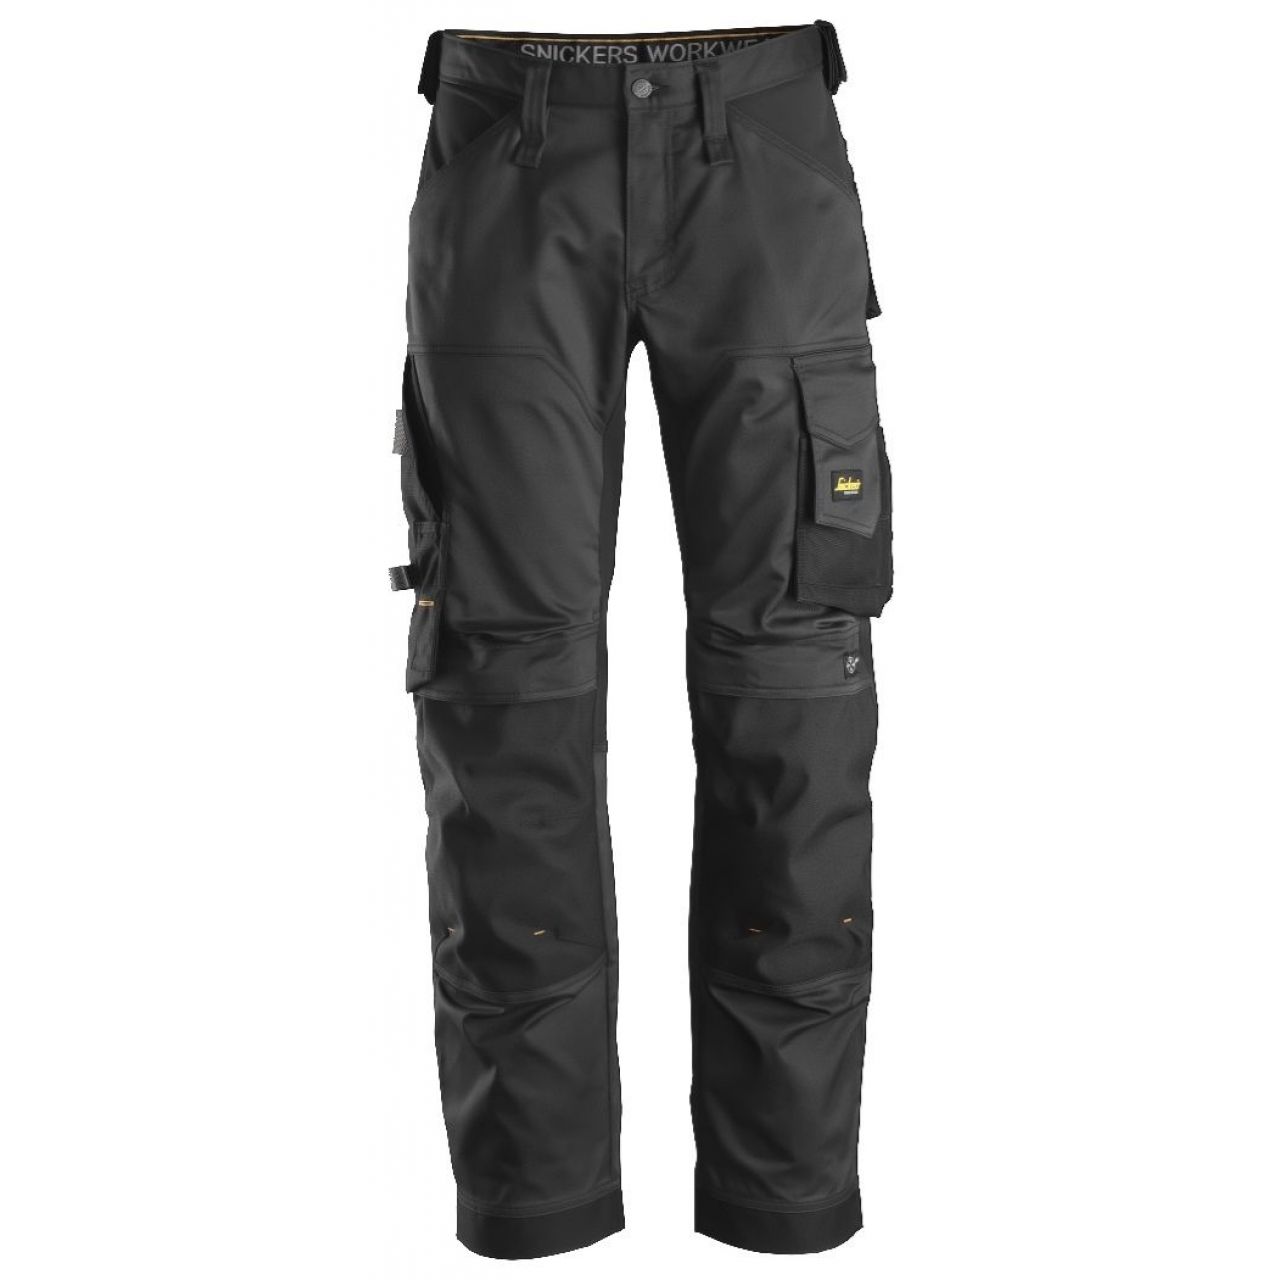 Pantalon elastico ajuste holgado AllroundWork negro talla 250